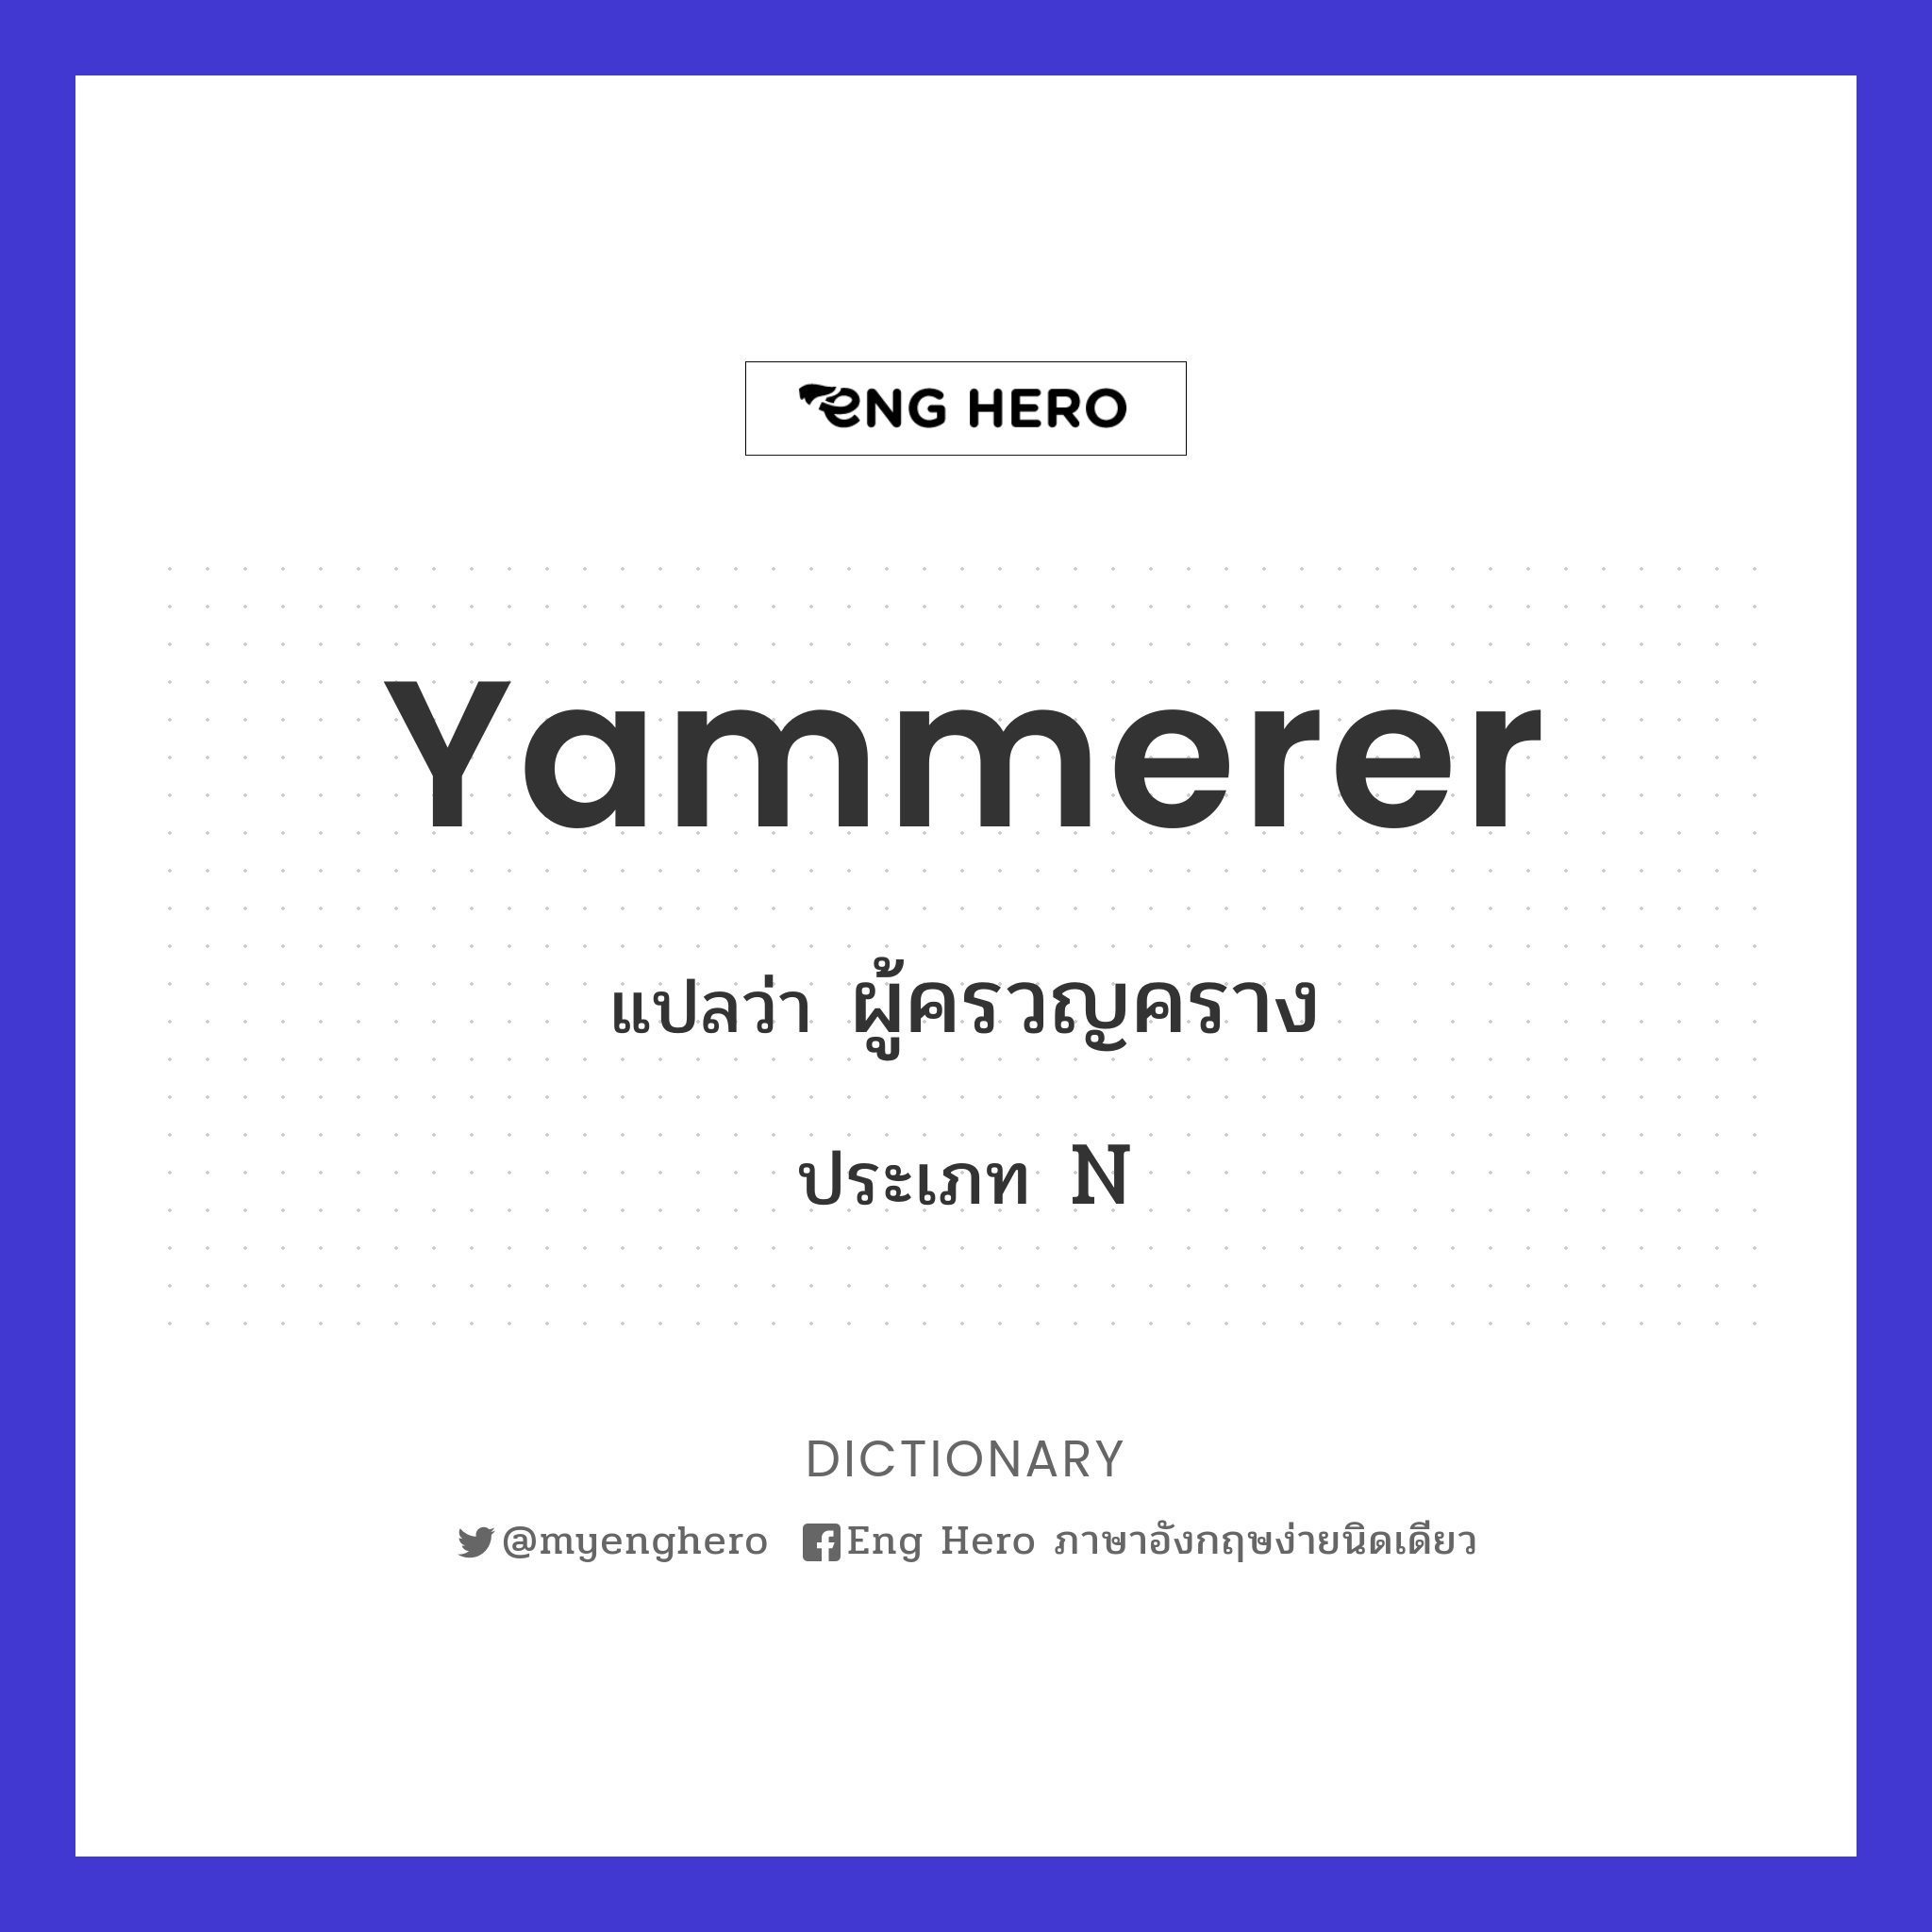 yammerer